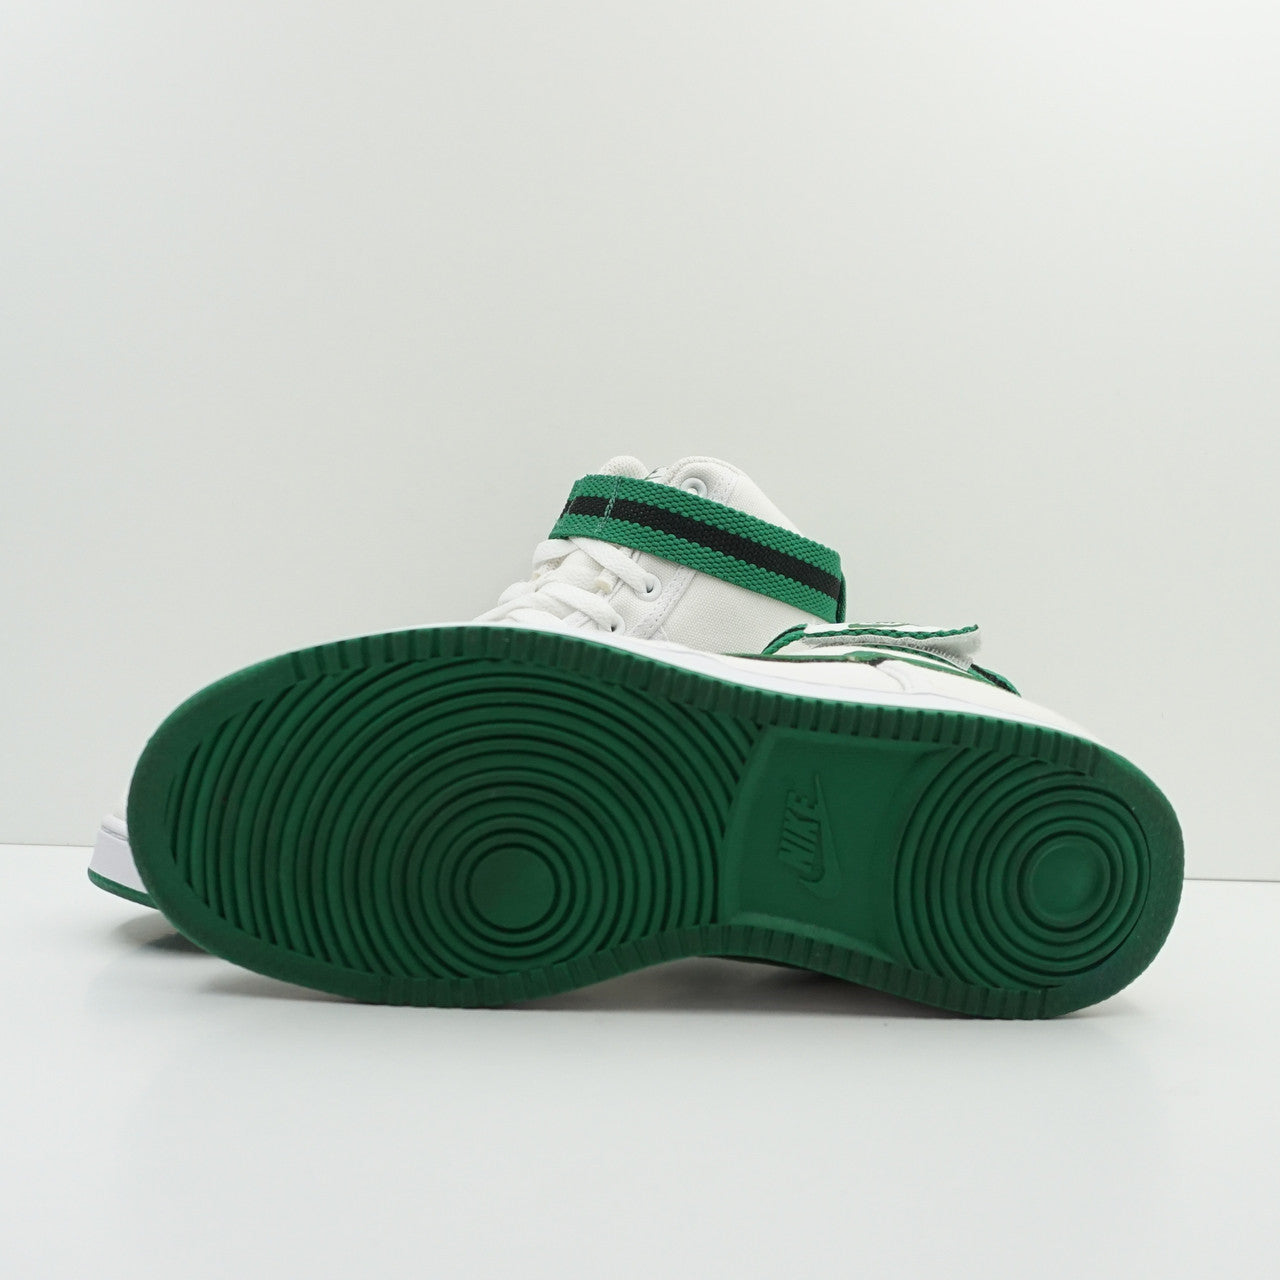 Nike Vandal High Green/White